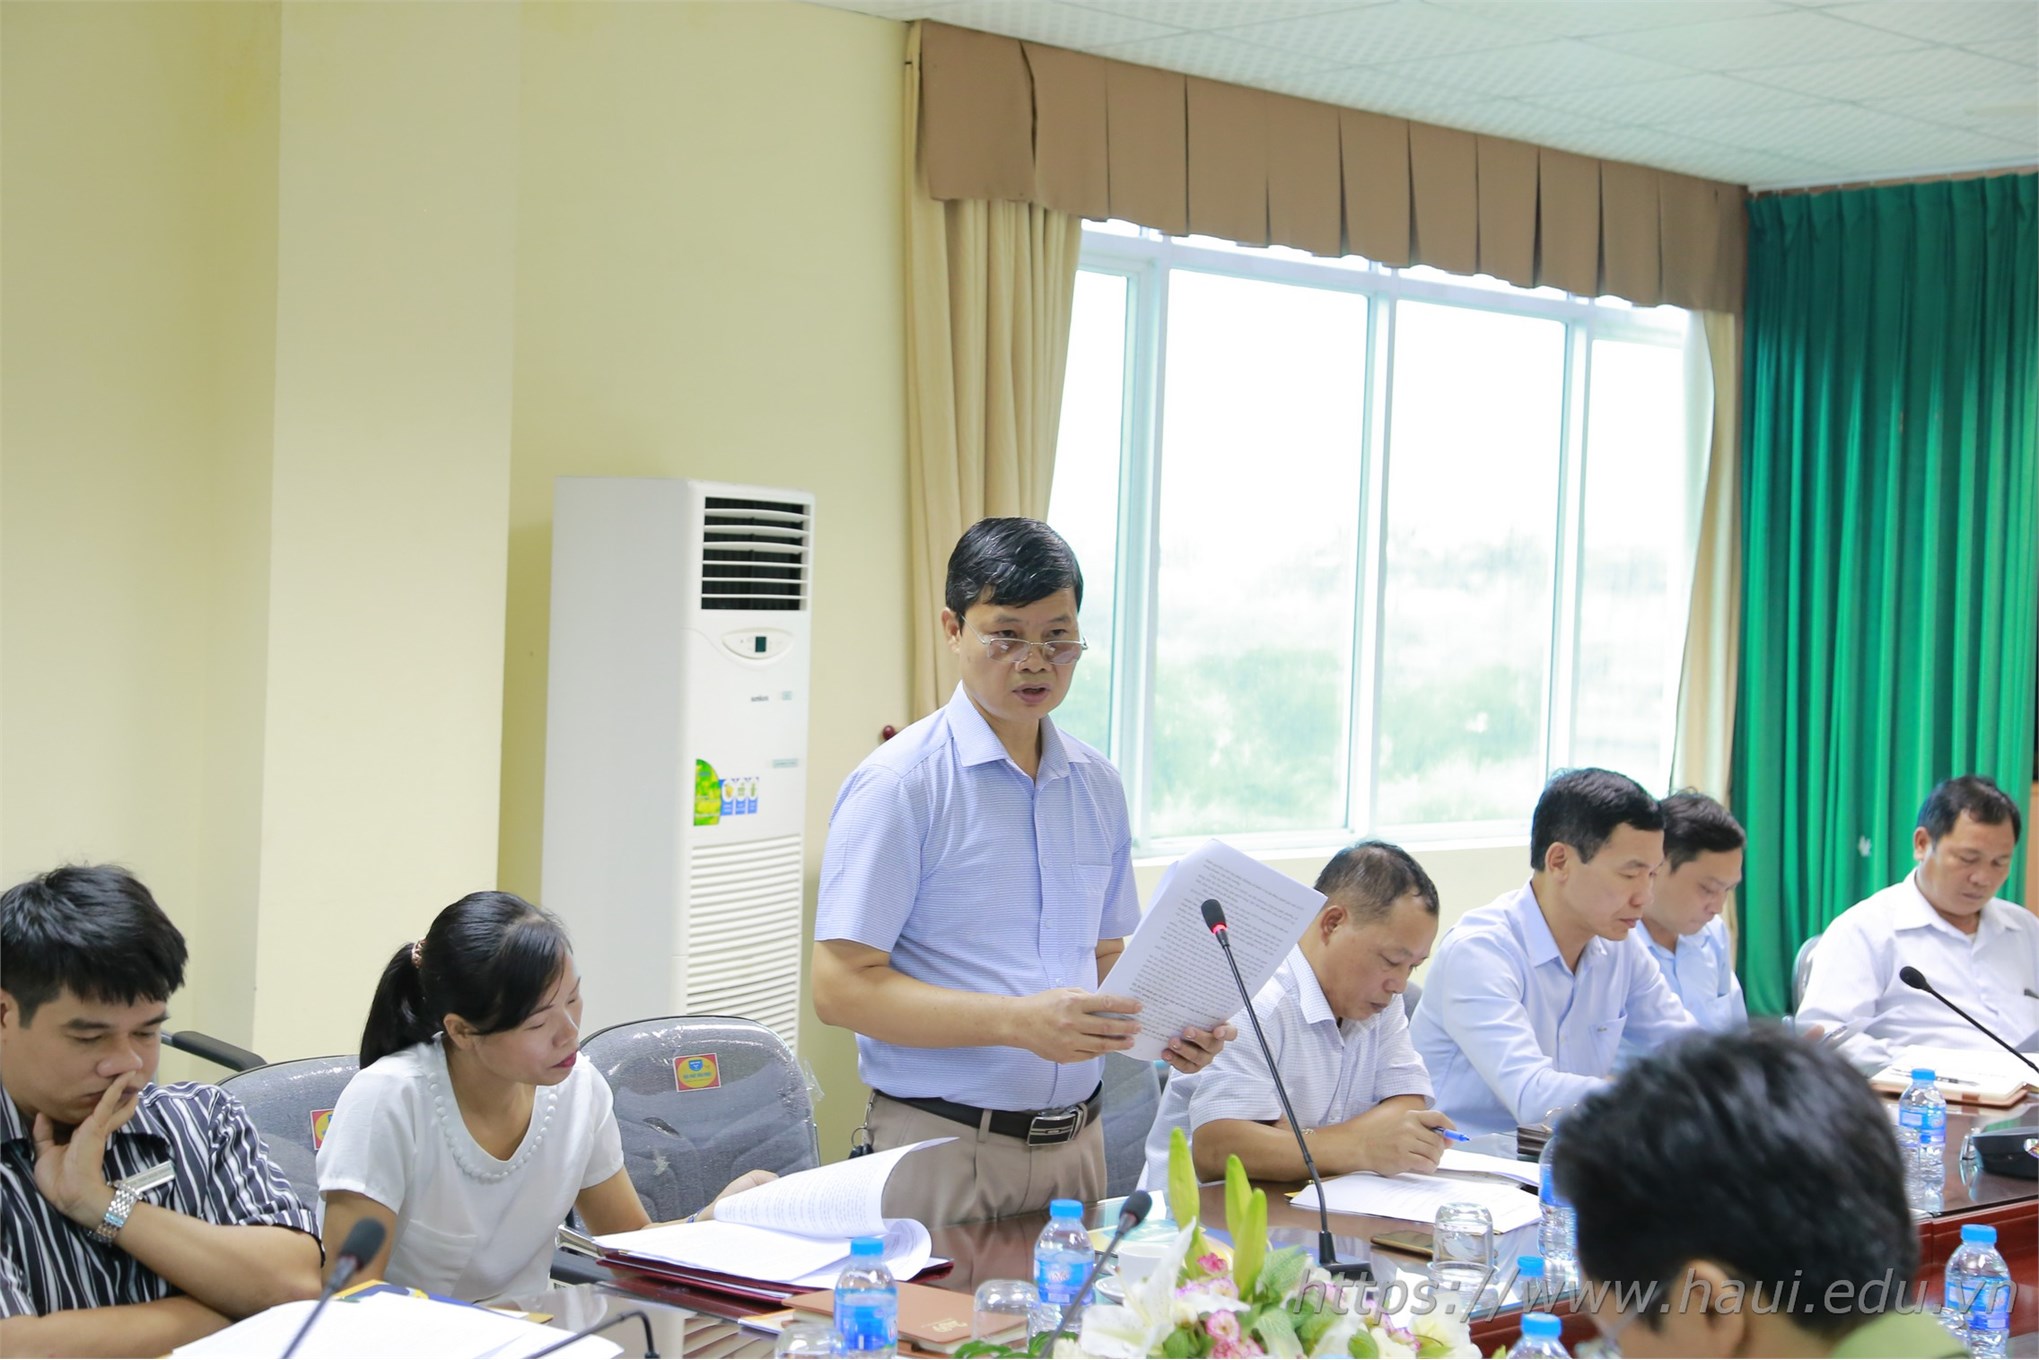 Đại học Công nghiệp Hà Nội tổng kết công tác đảm bảo ANTT năm học 2018 - 2019 và Sơ kết thực hiện mô hình “Trung tâm KTX đảm bảo về ANTT, không tệ nạn xã hội”